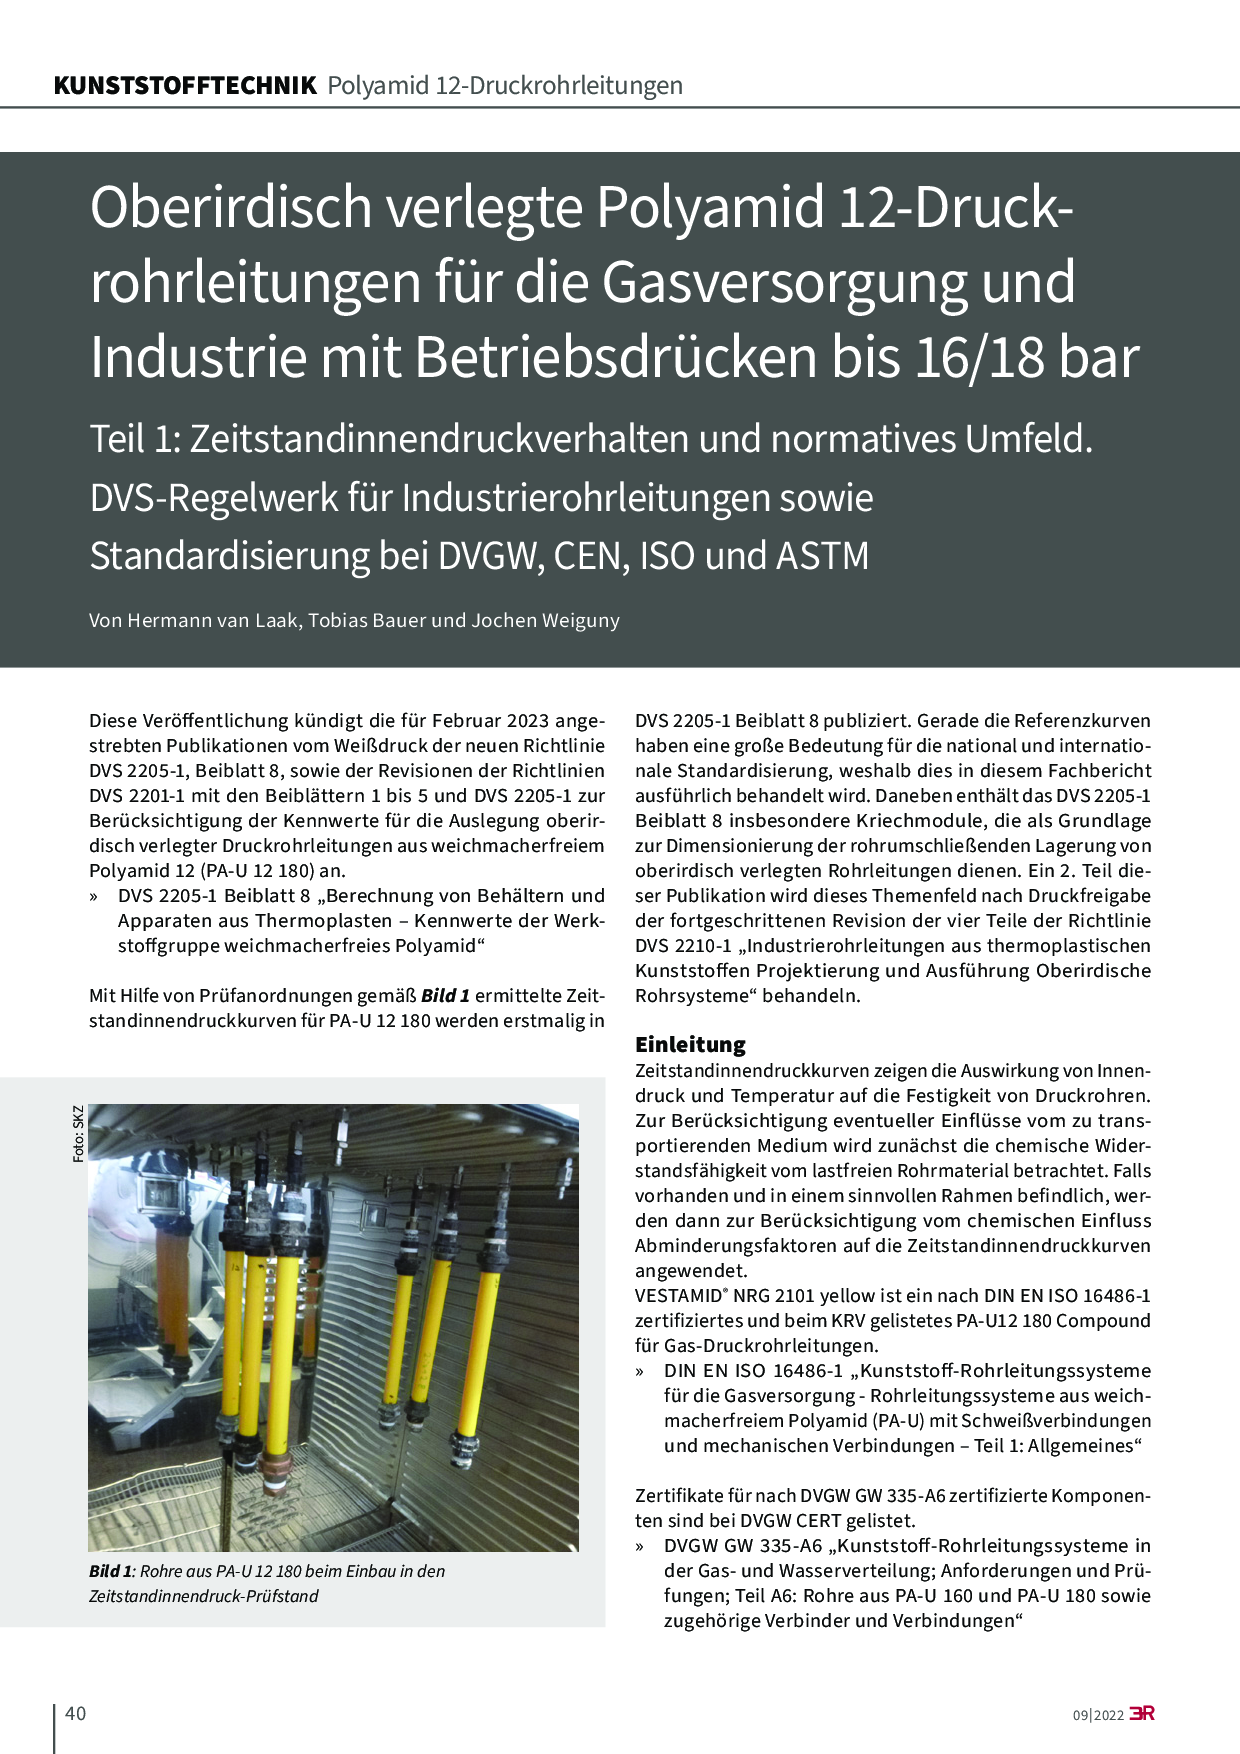 Oberirdisch verlegte Polyamid 12-Druckrohrleitungen für die Gasversorgung und Industrie mit Betriebsdrücken bis 16/18 bar